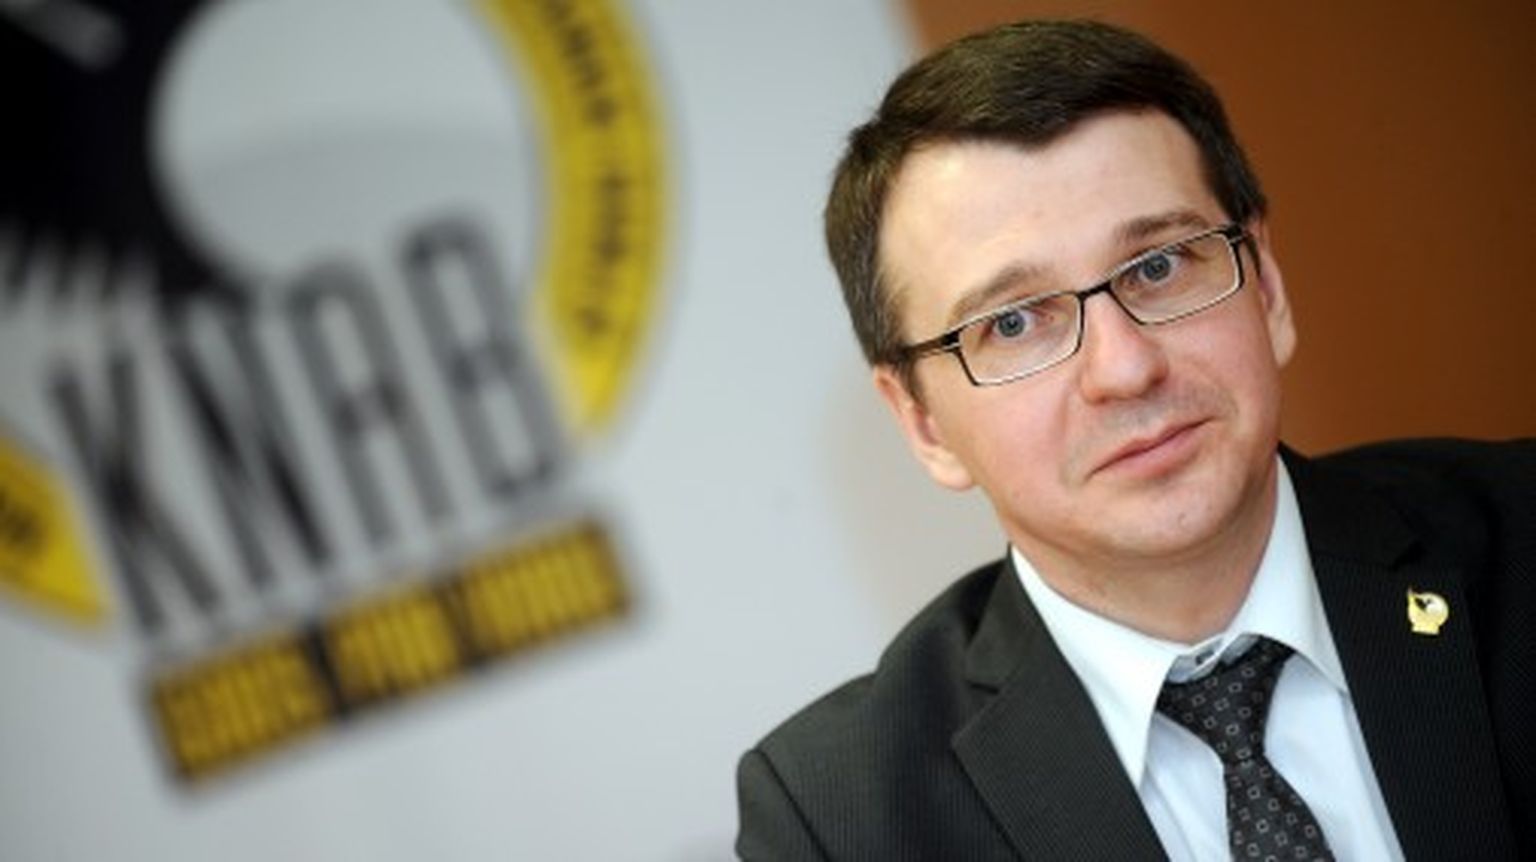 Korupcijas novēršanas un apkarošanas biroja (KNAB) priekšnieks Jaroslavs Streļčenoks